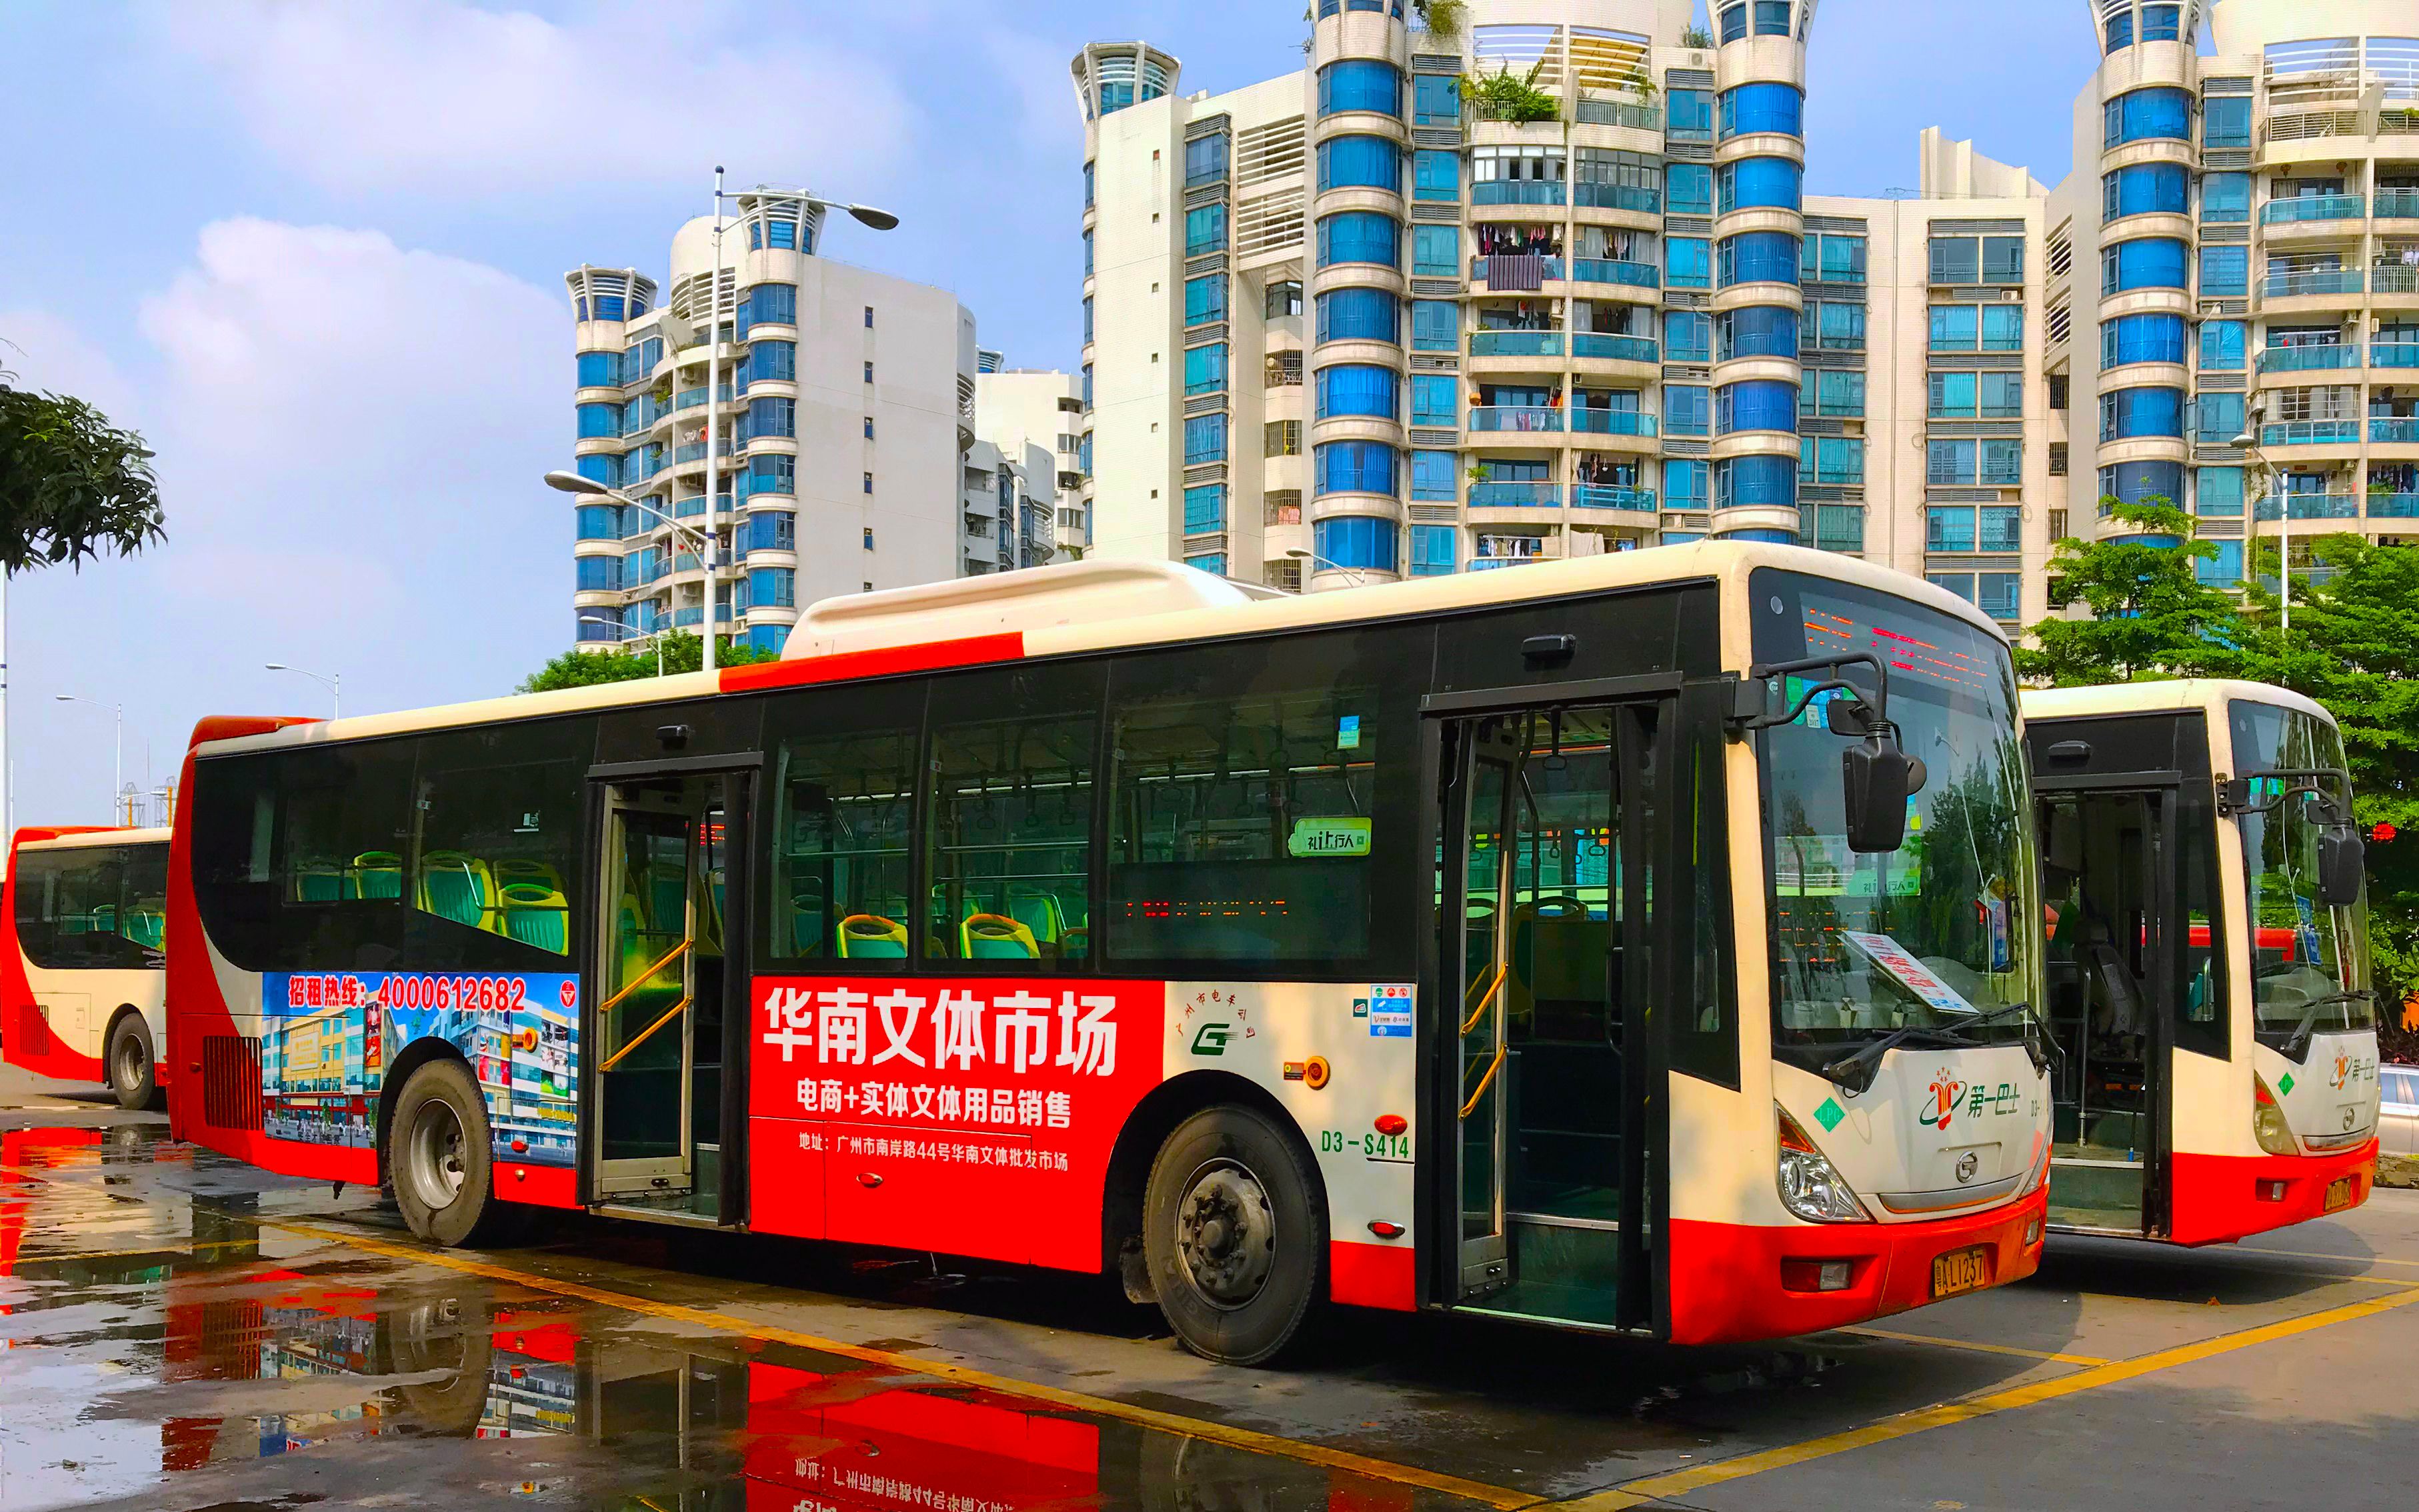 肇庆市公交车车身广告_招商|价格|电话 - 易播网